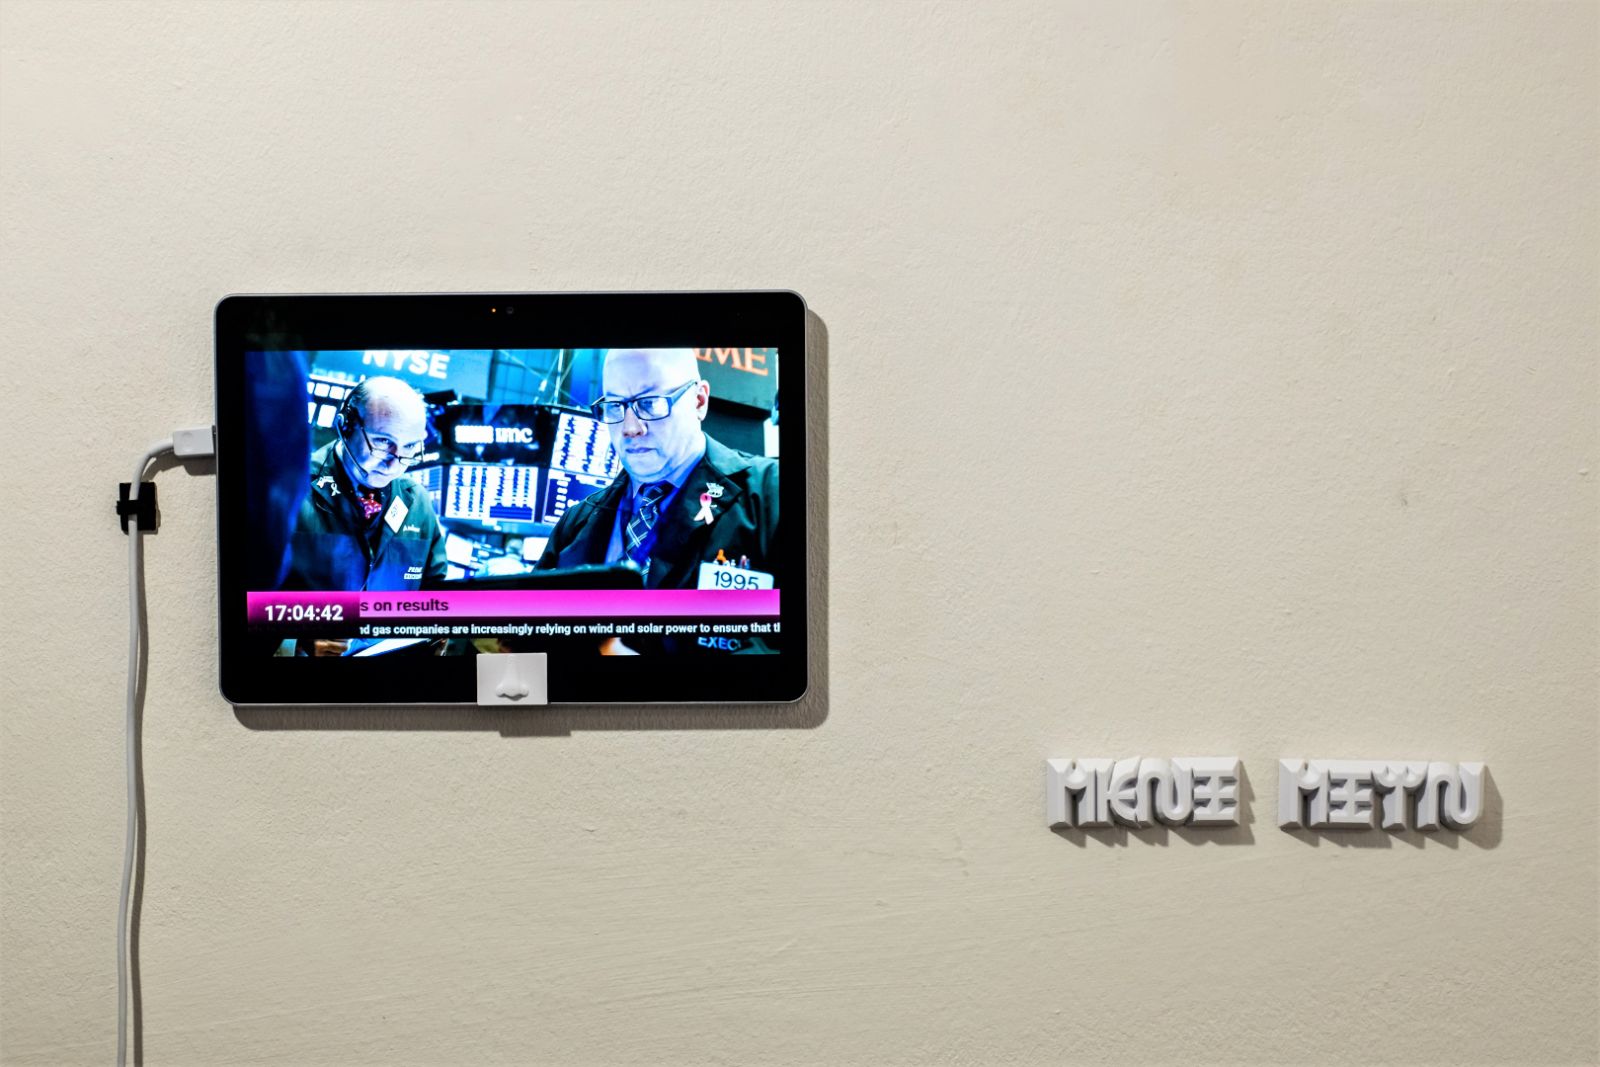 Signalkrebsene invaderer vores wifi - spørg bare billedkunstner Kristoffer Ørum</br>Fra udstillingen 'Putins næse' på Møstings Hus.</br>Foto: PR-foto - Møstings Hus / Palle Bo Nielsen